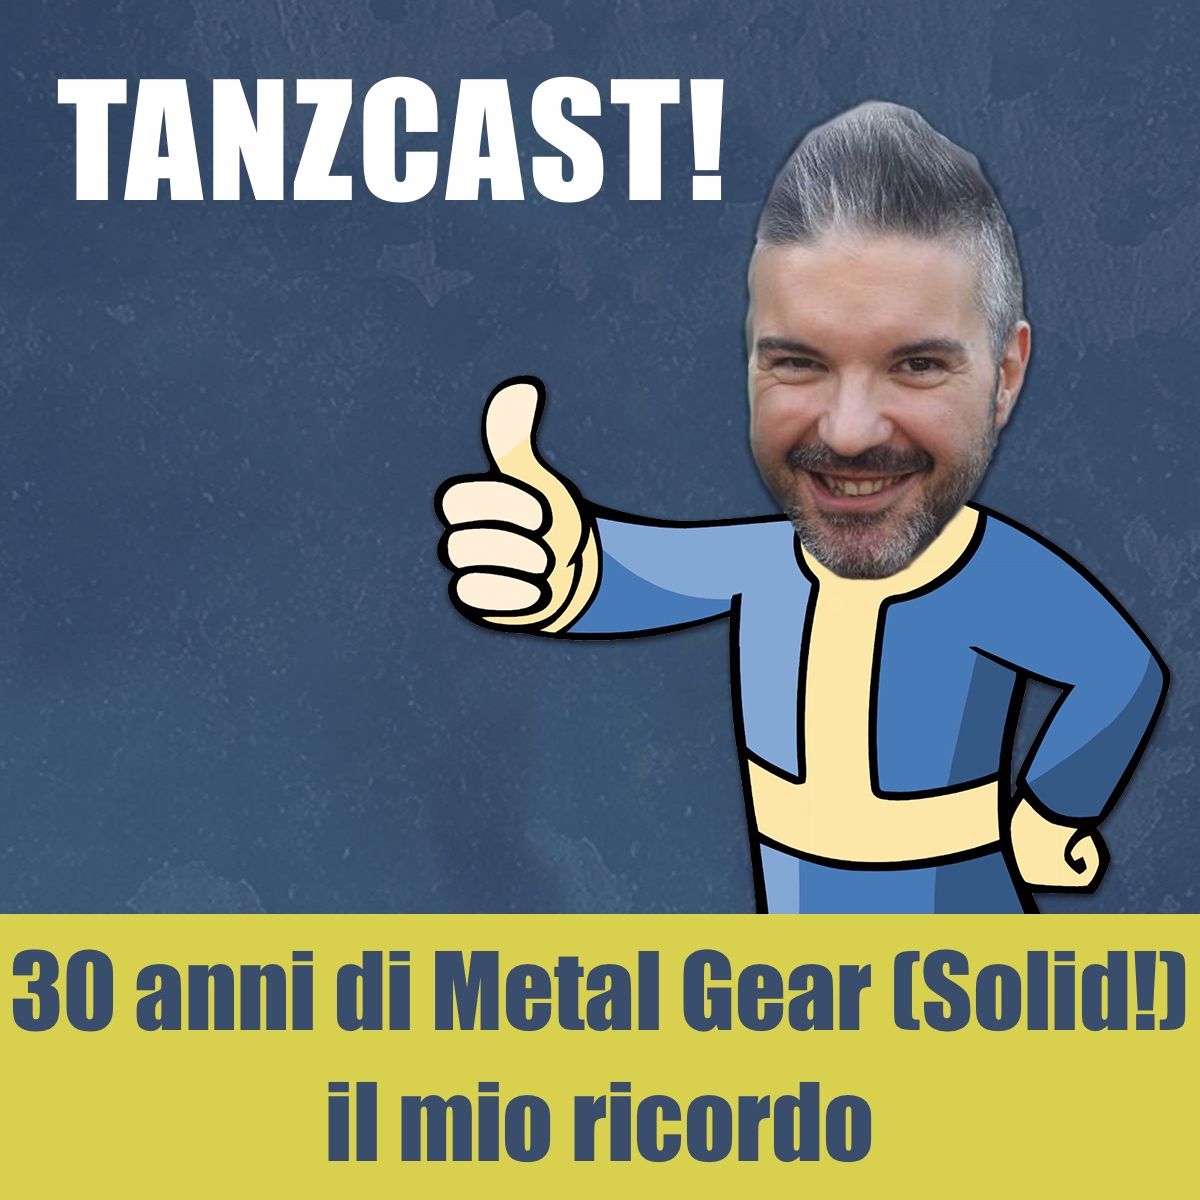 La mia celebrazione dei 30 anni della saga di Metal Gear (Solid)! - Videogiochi #16